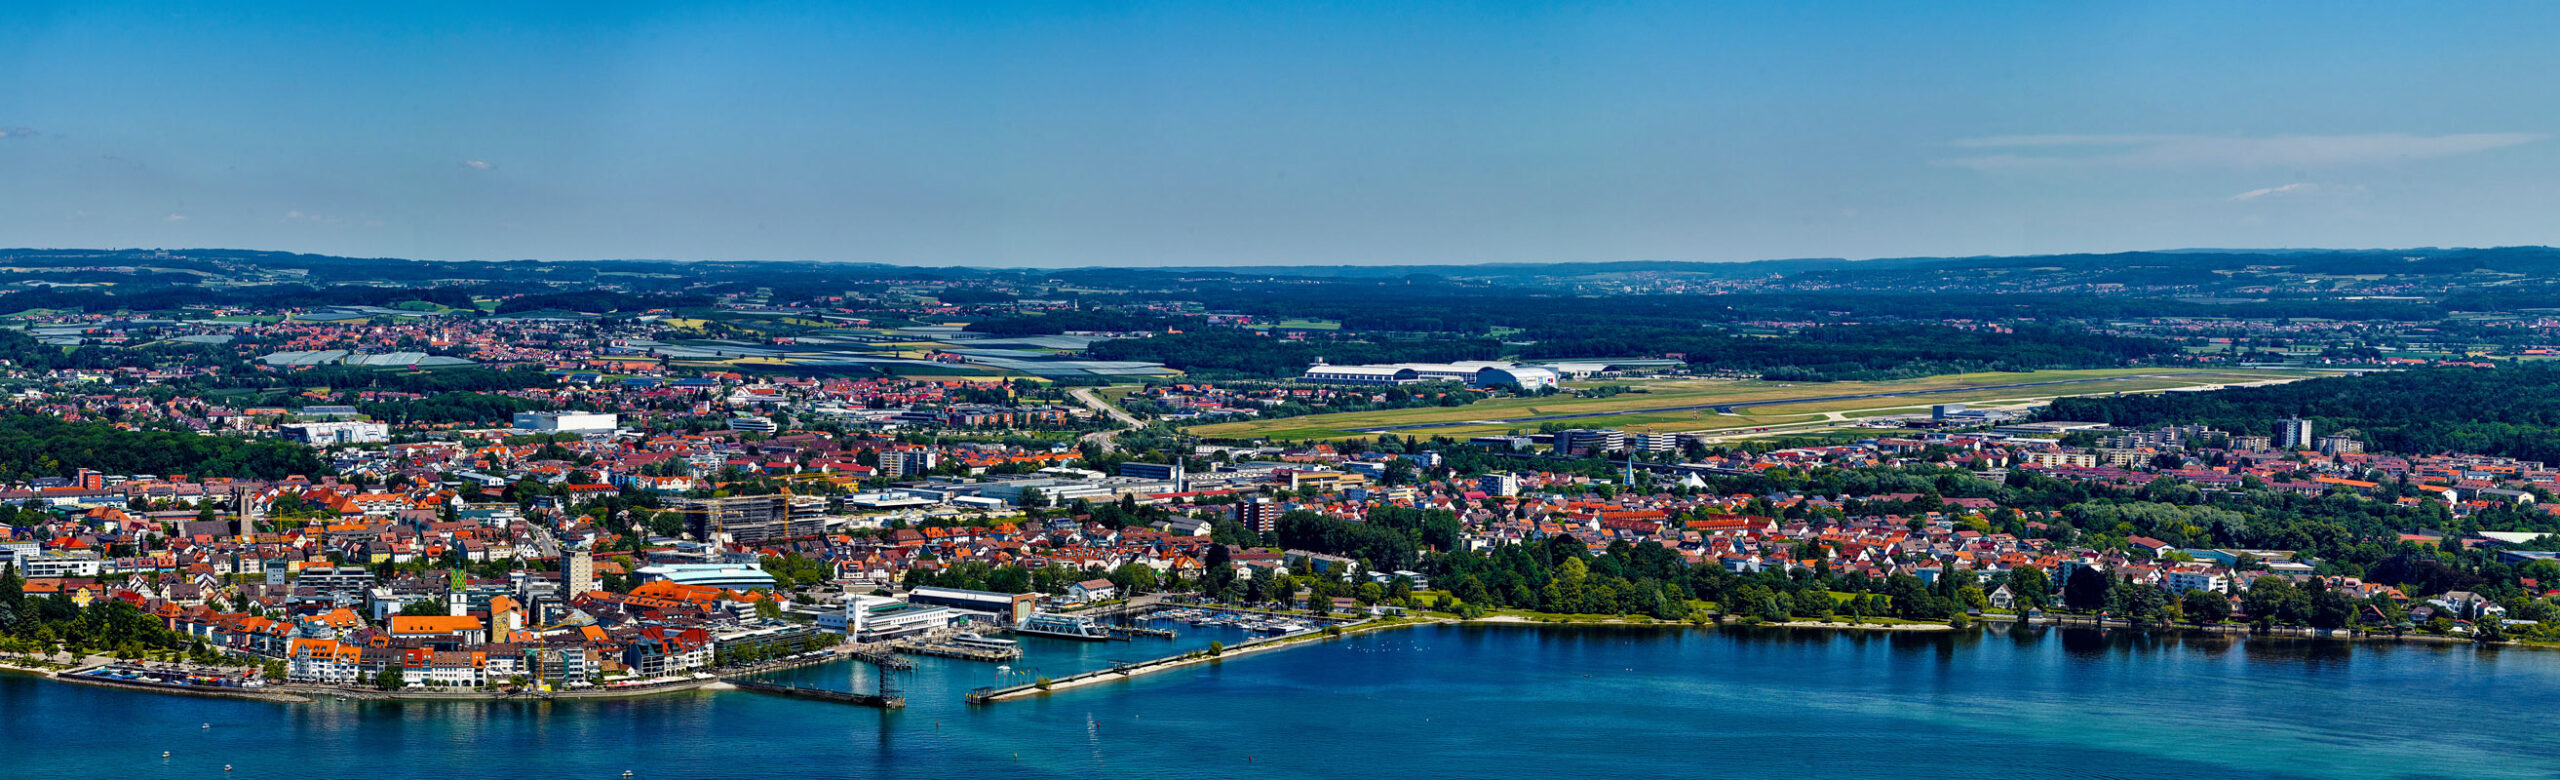 Luftbild Friedrichshafen von der Seeseite aus